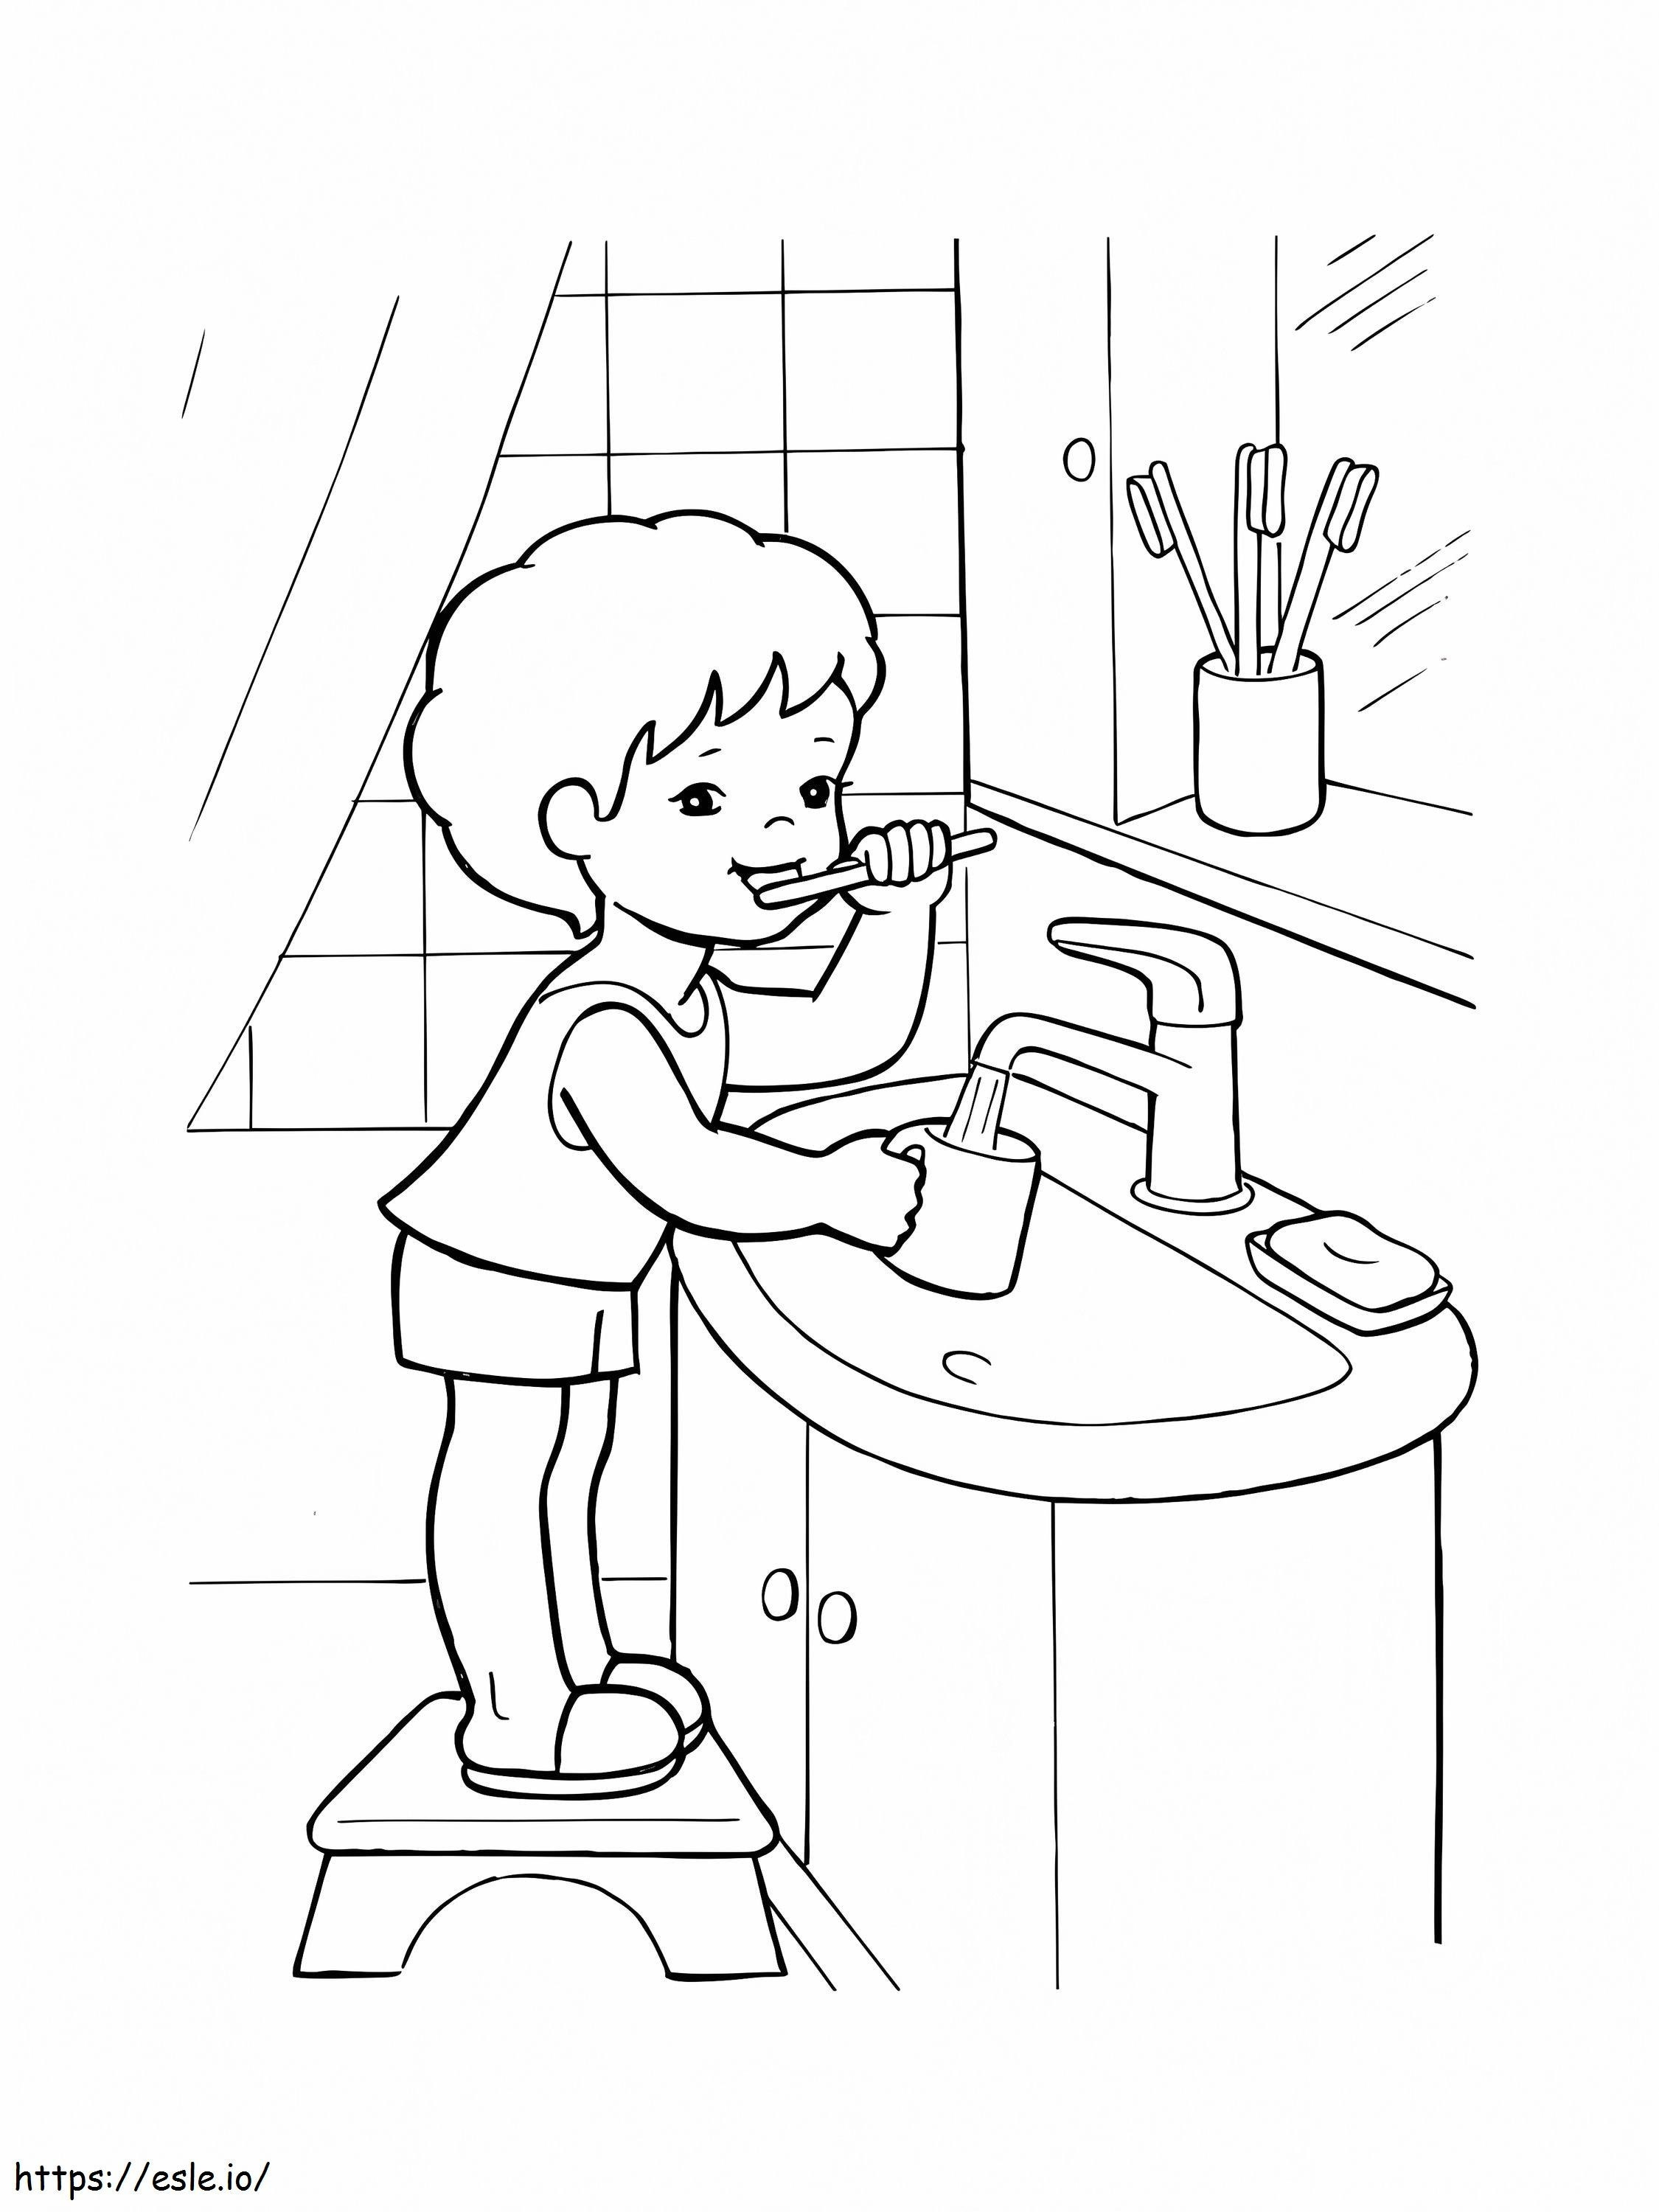 Junge putzt Zähne ausmalbilder